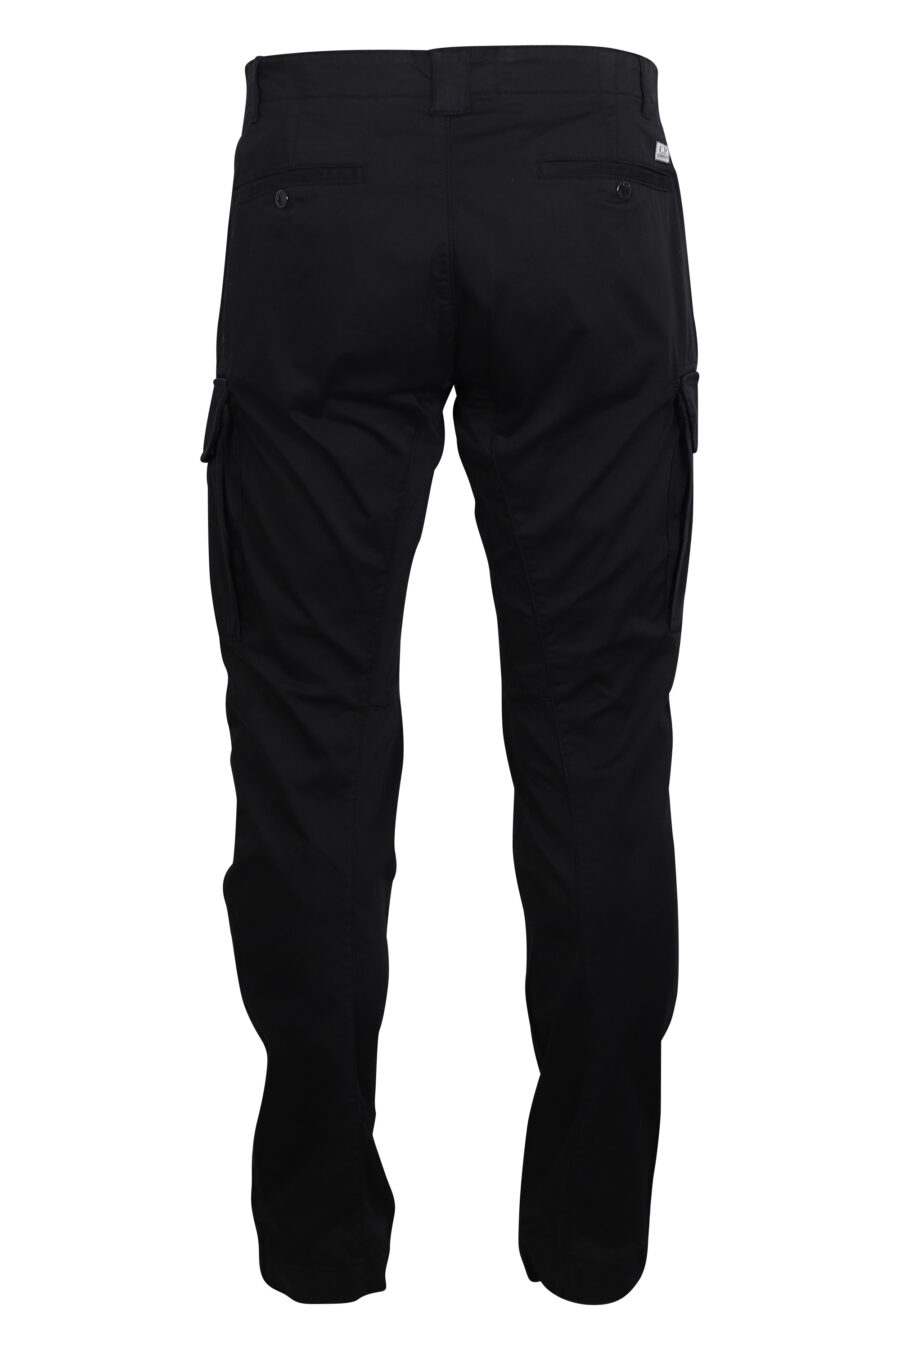 Pantalón negro cargo con minilogo circular - IMG 2470 1